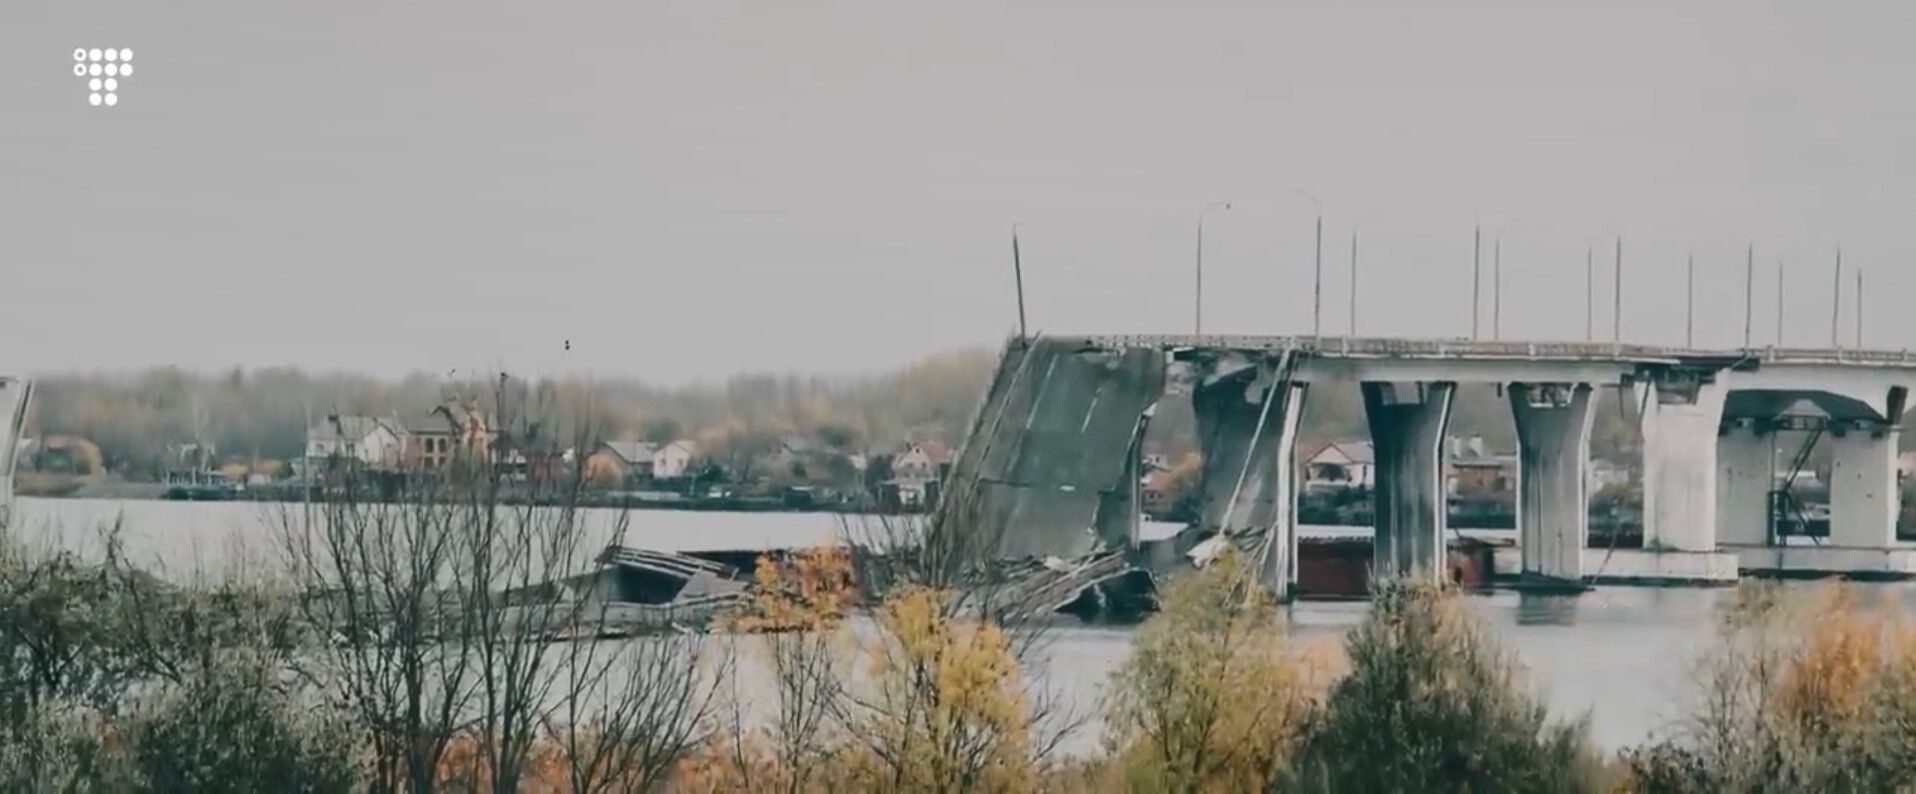 Бійці ЗСУ показали бій біля Антонівського мосту під Херсоном (відео)